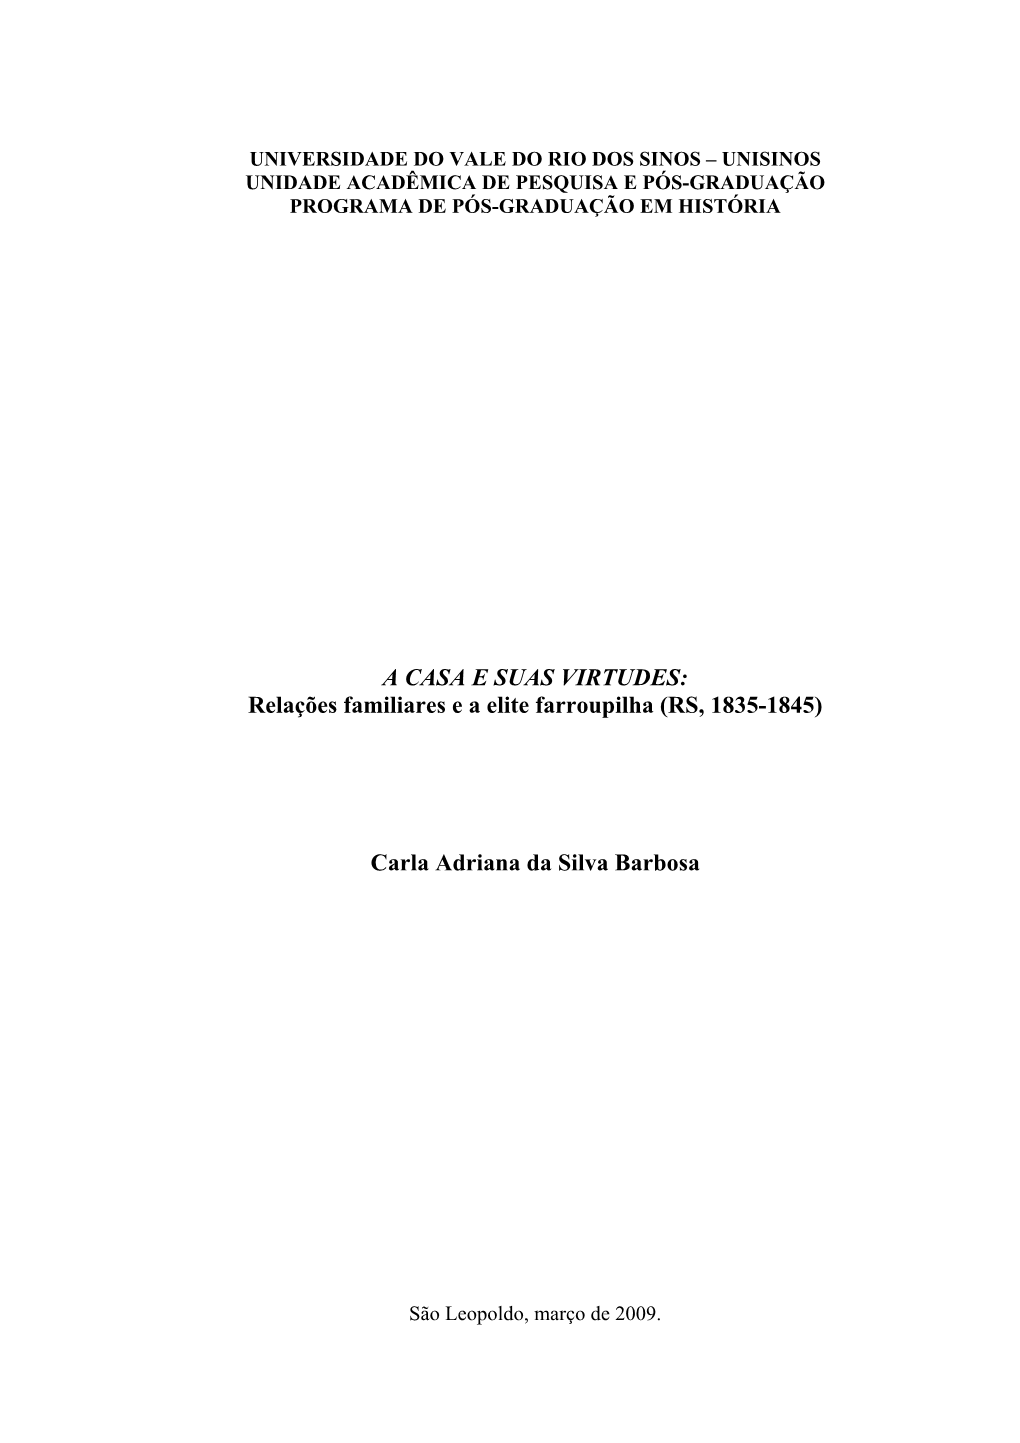 A CASA E SUAS VIRTUDES: Relações Familiares E a Elite Farroupilha (RS, 1835-1845)